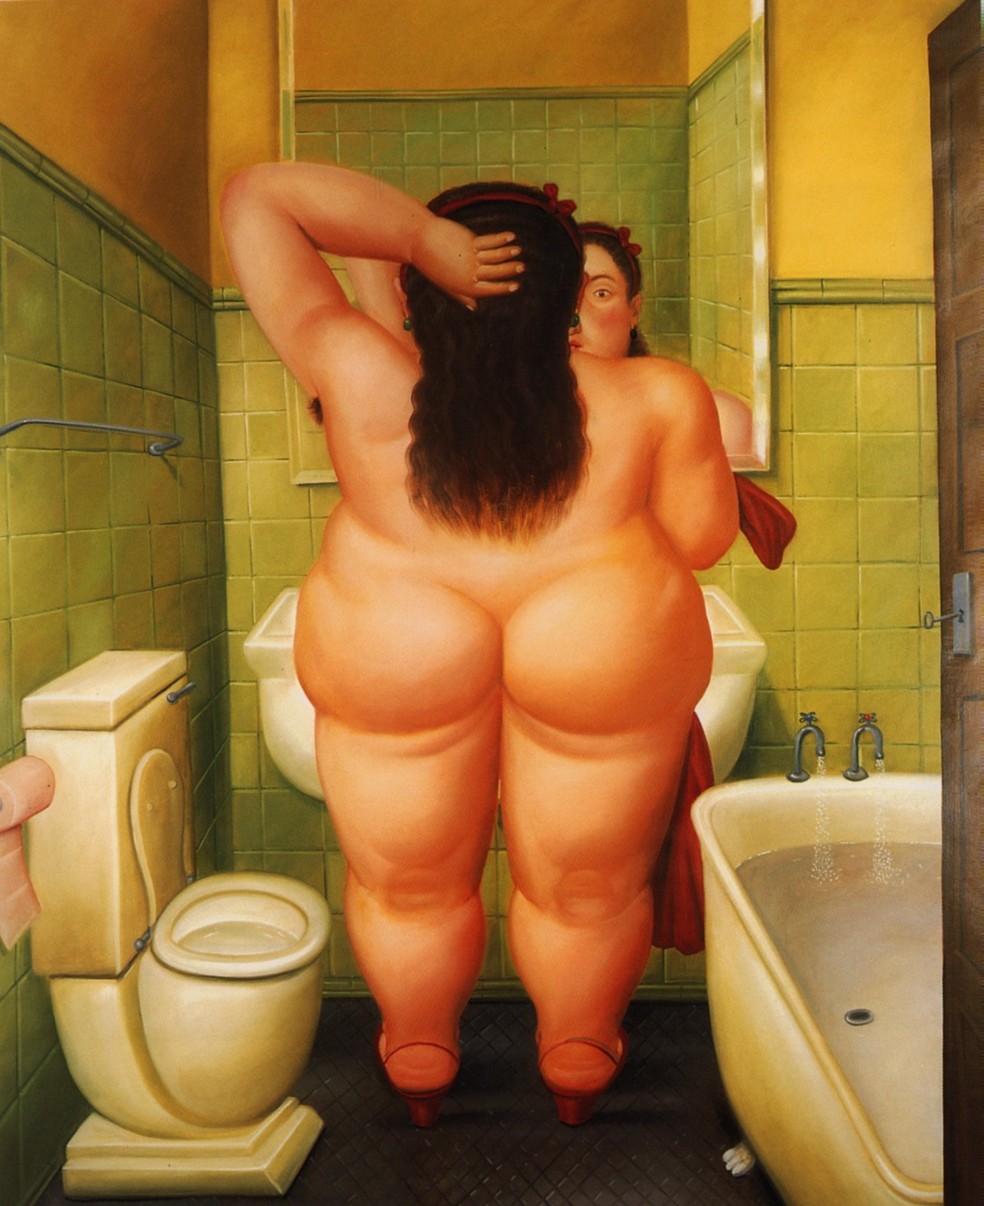 Pintura 'O banheiro', do artista plástico Fernando Botero, de 1989 — Foto: Divulgação